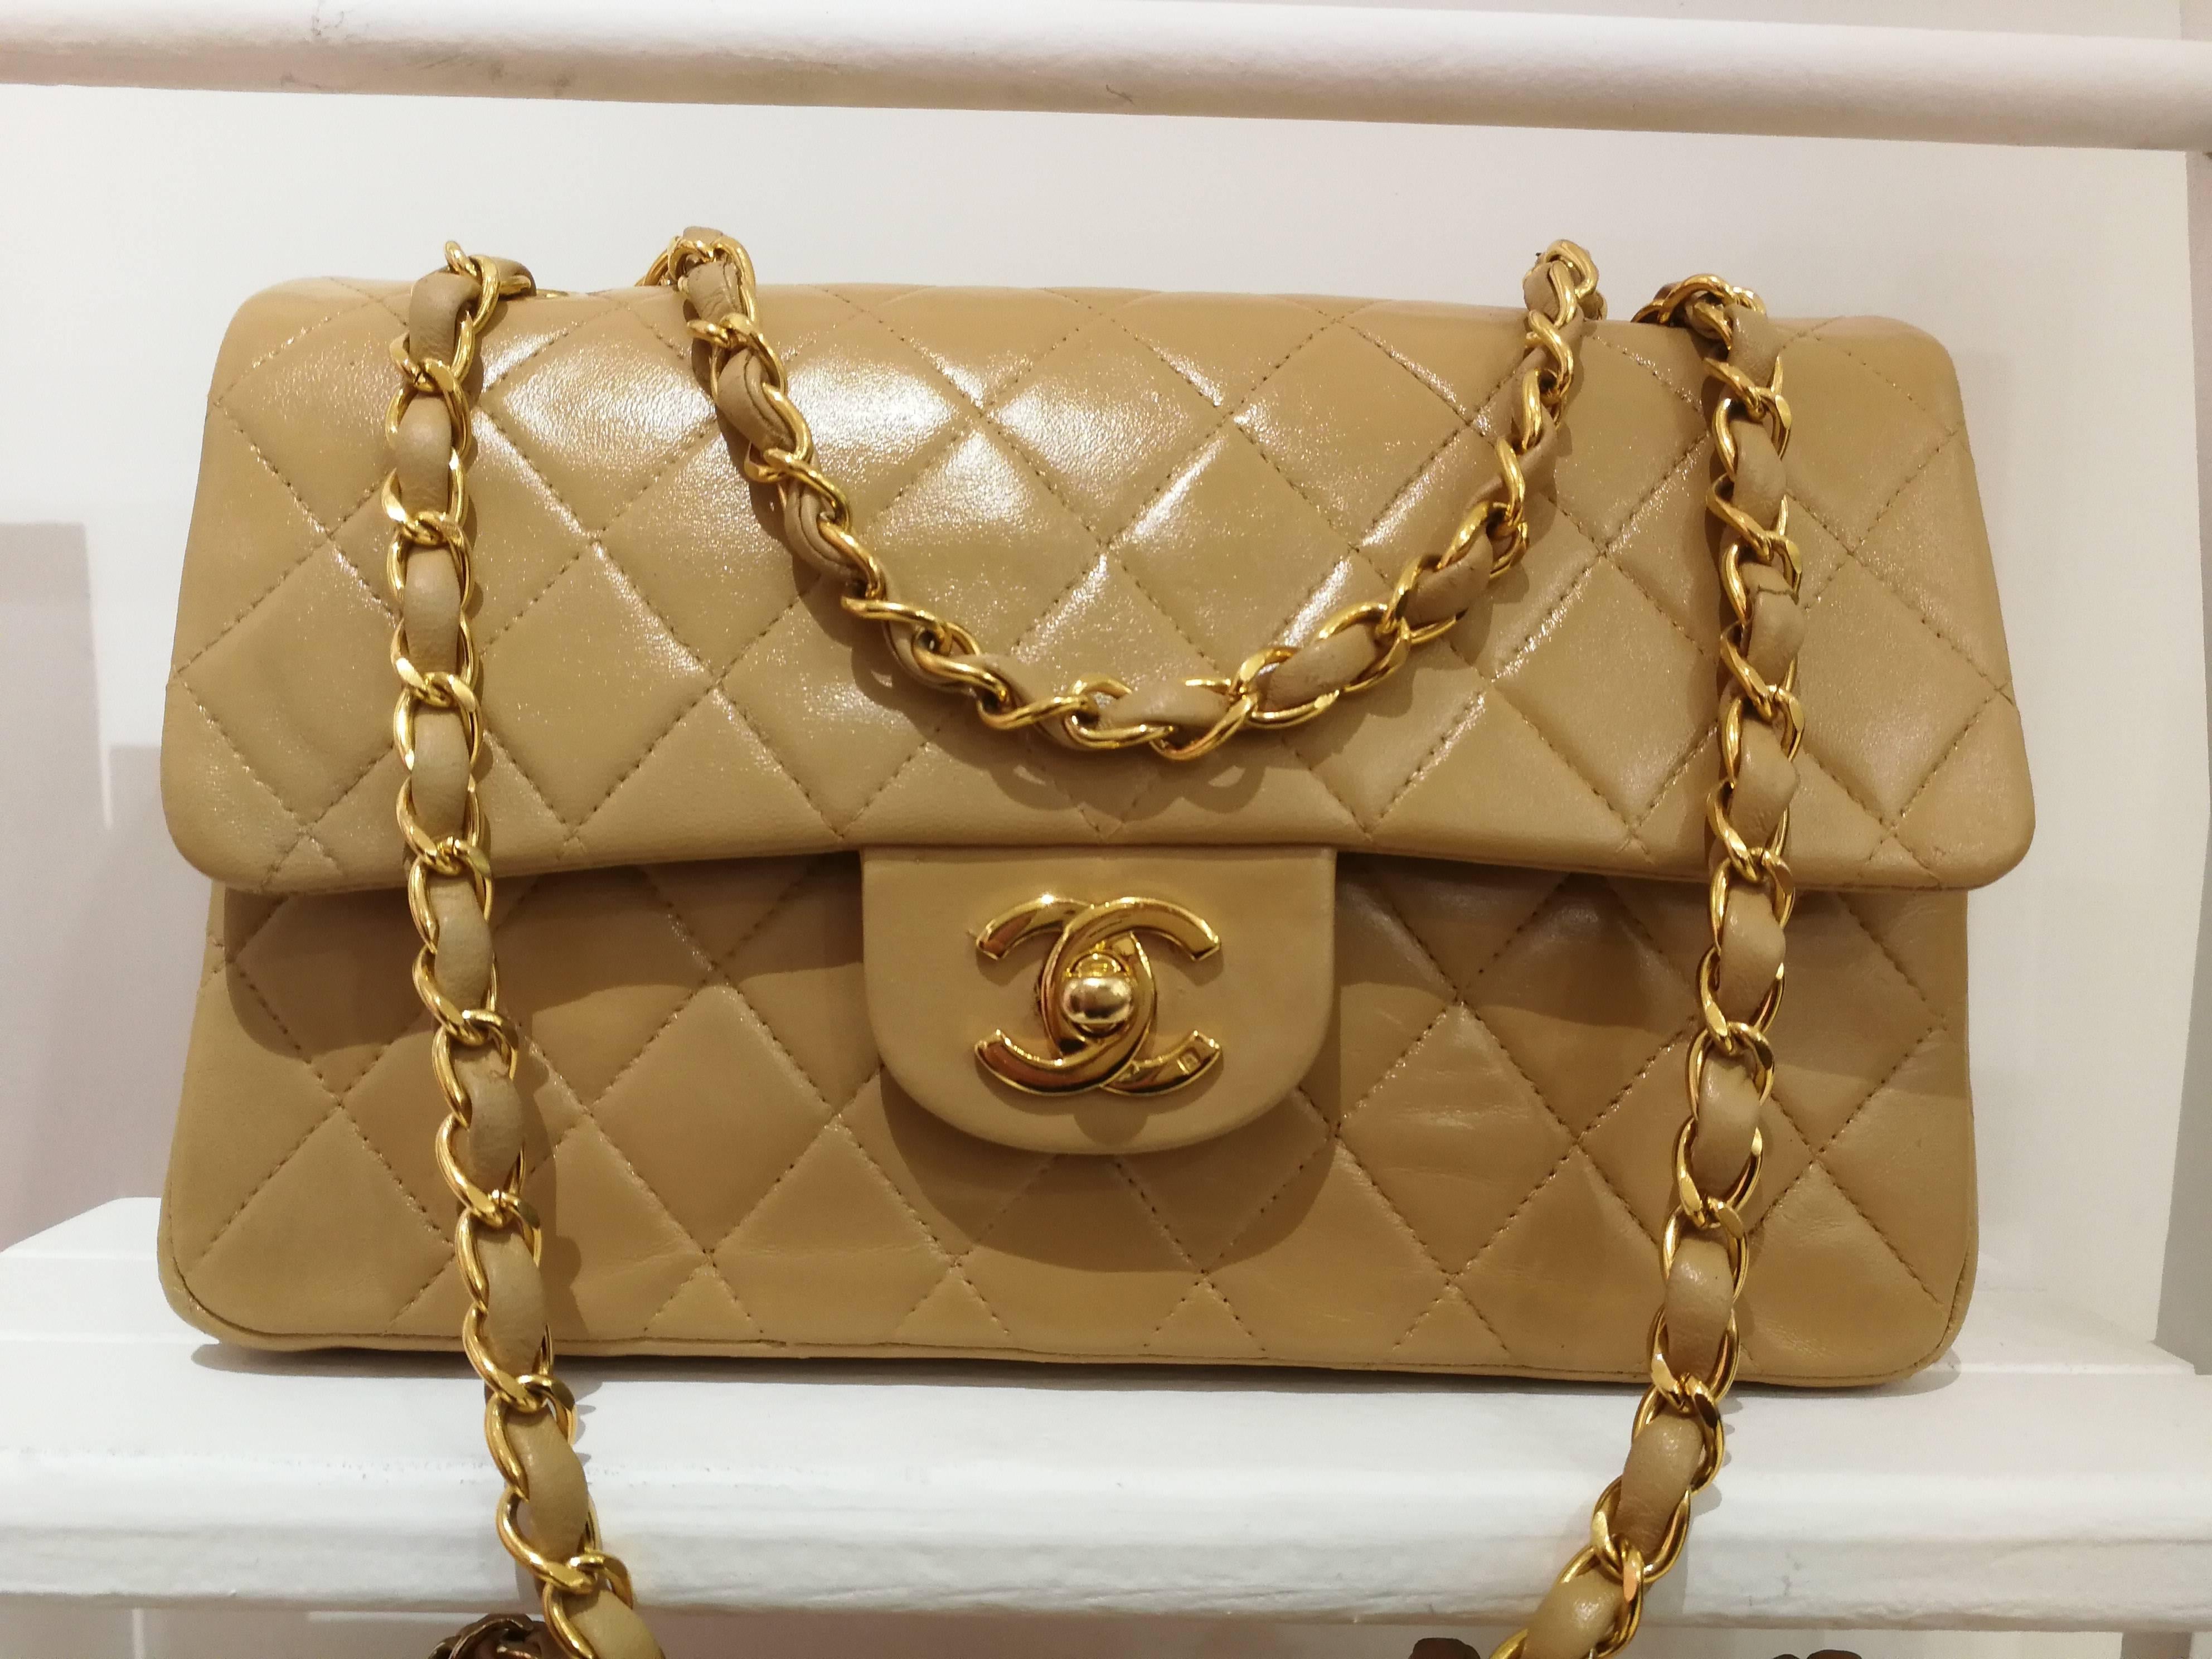 Brown Chanel beije gold hardware 2.55 shoulder bag